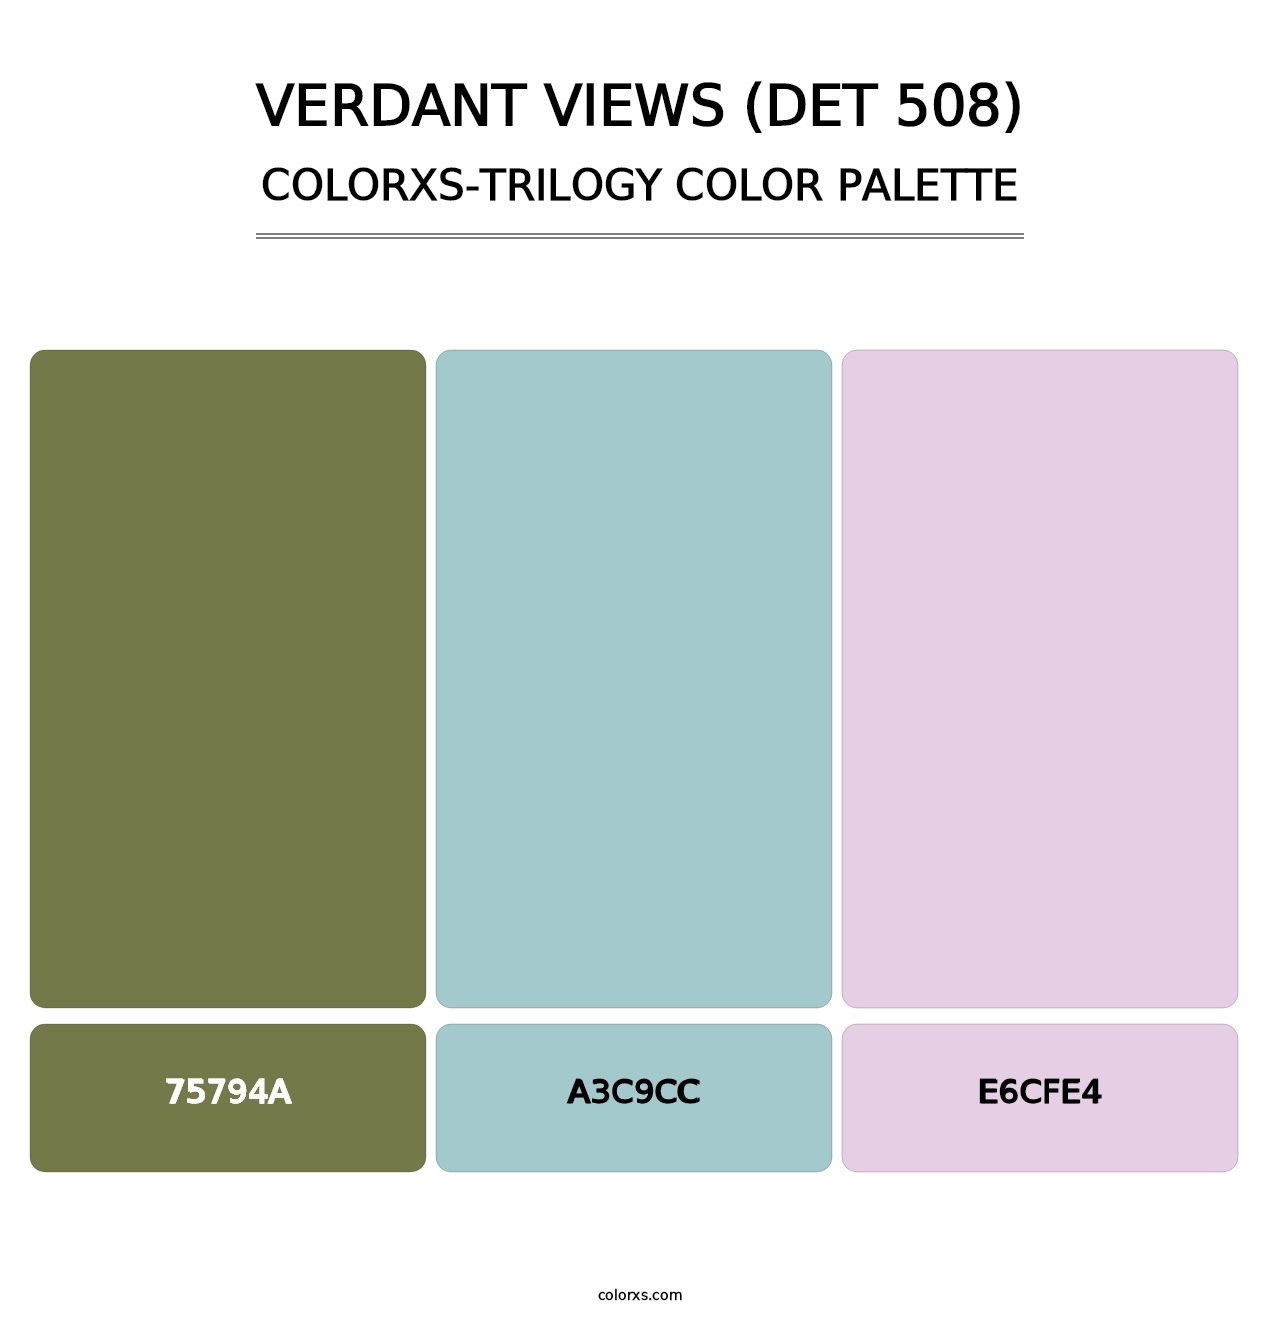 Verdant Views (DET 508) - Colorxs Trilogy Palette